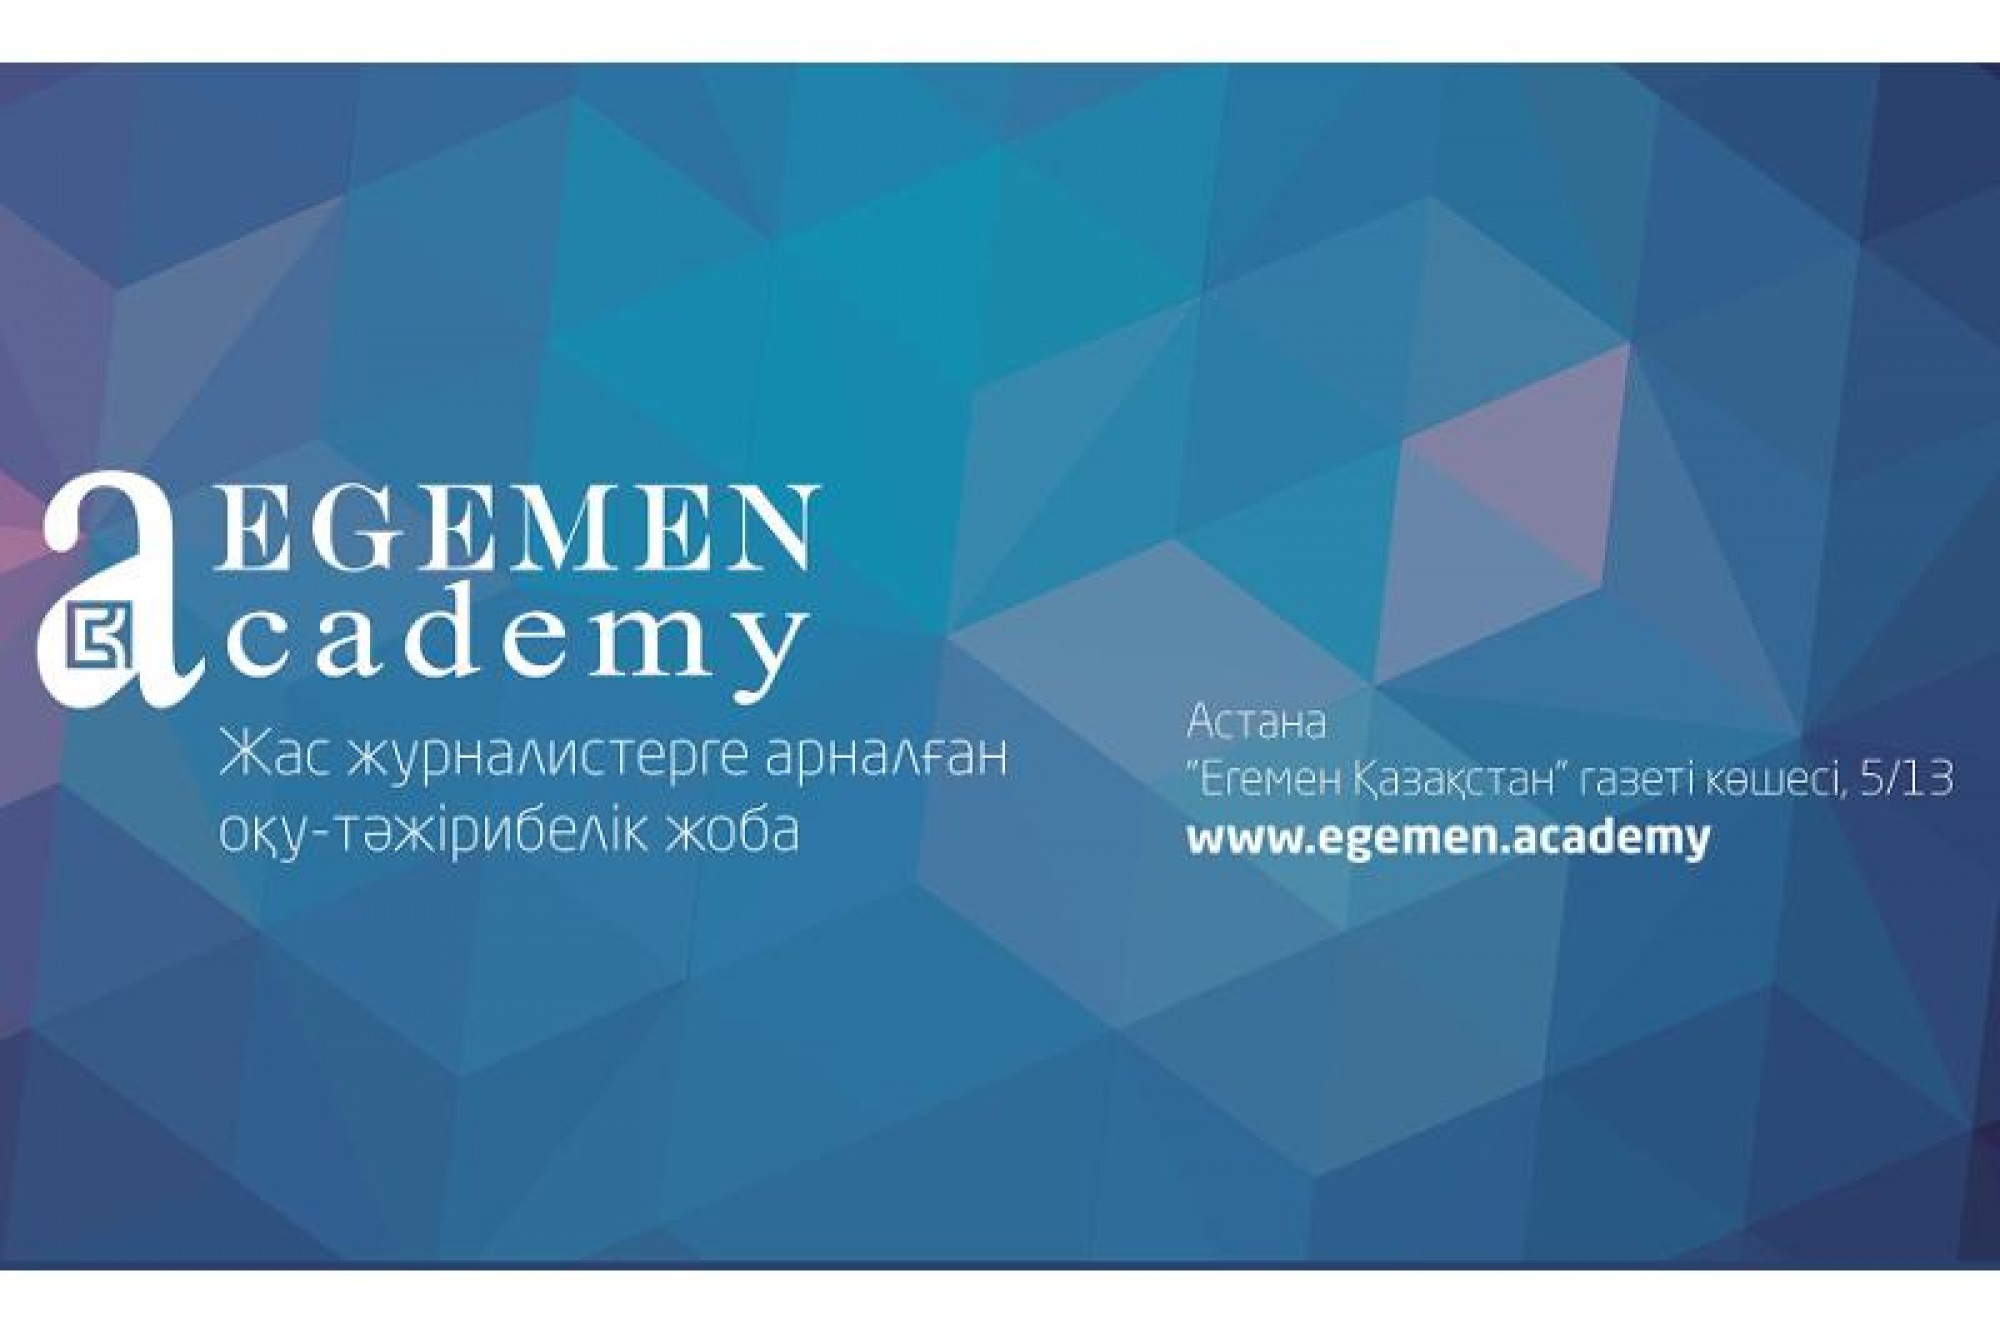 Сегодня состоится первое занятие «Егемен академиясы»